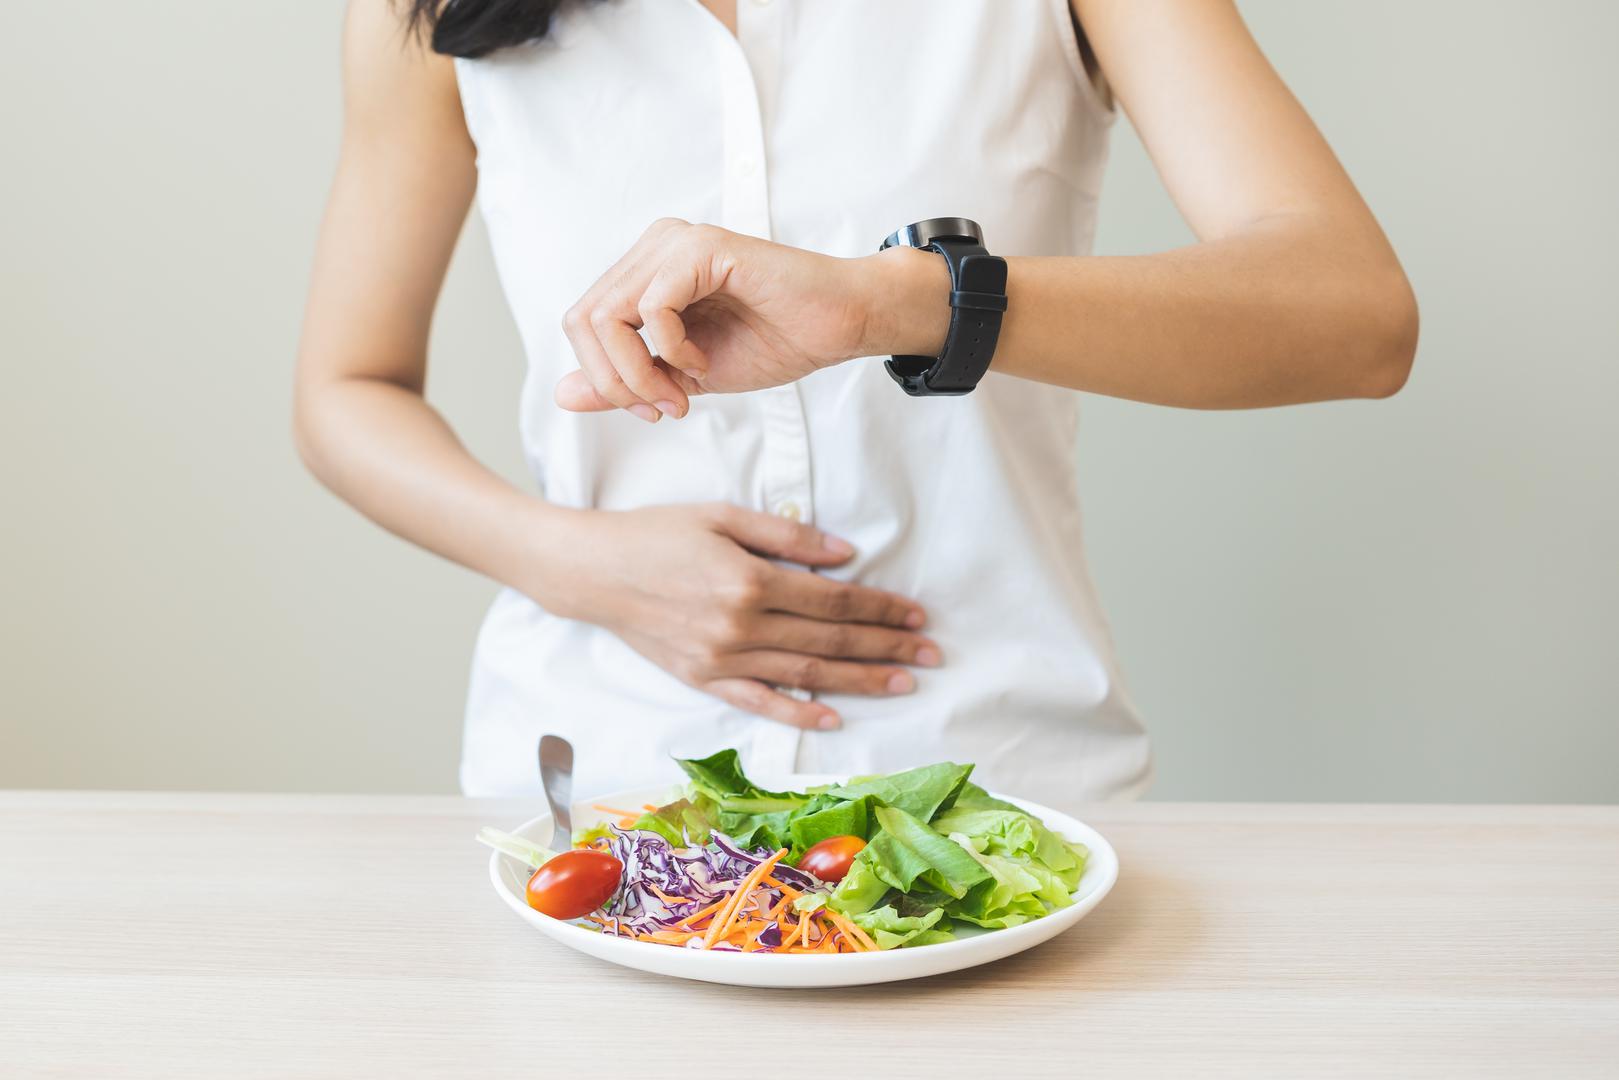 Zaboravljanje jedenja: Dr. Khan je sugerirao da bi osobe s ADHD-om mogle imati problema s održavanjem dosljednih prehrambenih navika. Hrana se može koristiti kao način za ublažavanje dosade, ali možete postati toliko usredotočeni na zadatak da zaboravite jesti nekoliko sati.